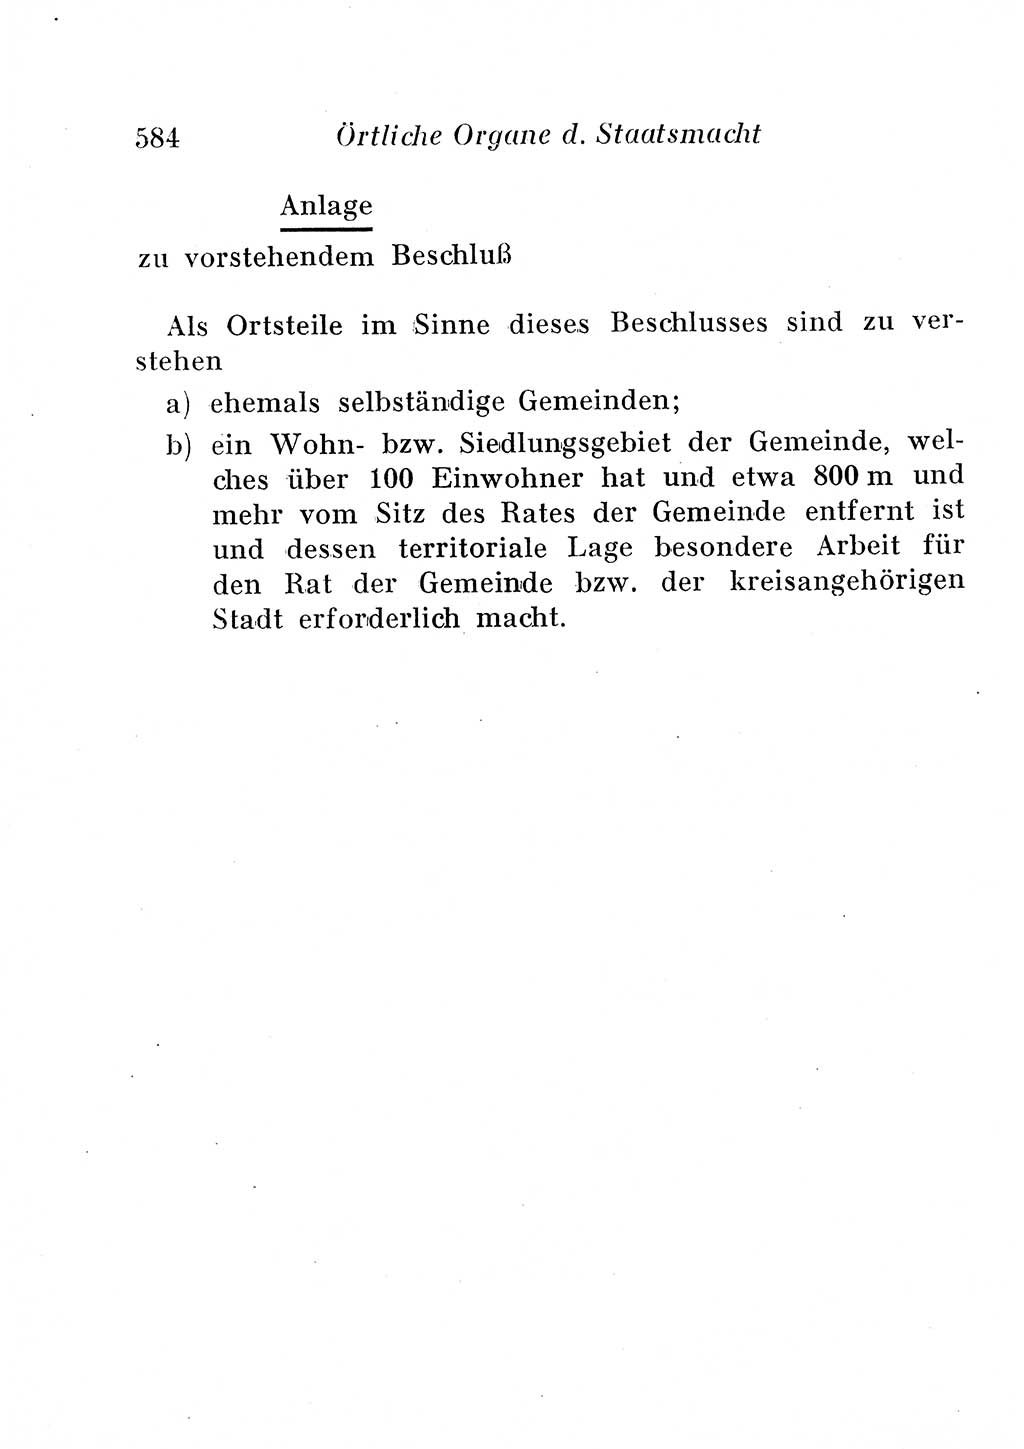 Staats- und verwaltungsrechtliche Gesetze der Deutschen Demokratischen Republik (DDR) 1958, Seite 584 (StVerwR Ges. DDR 1958, S. 584)